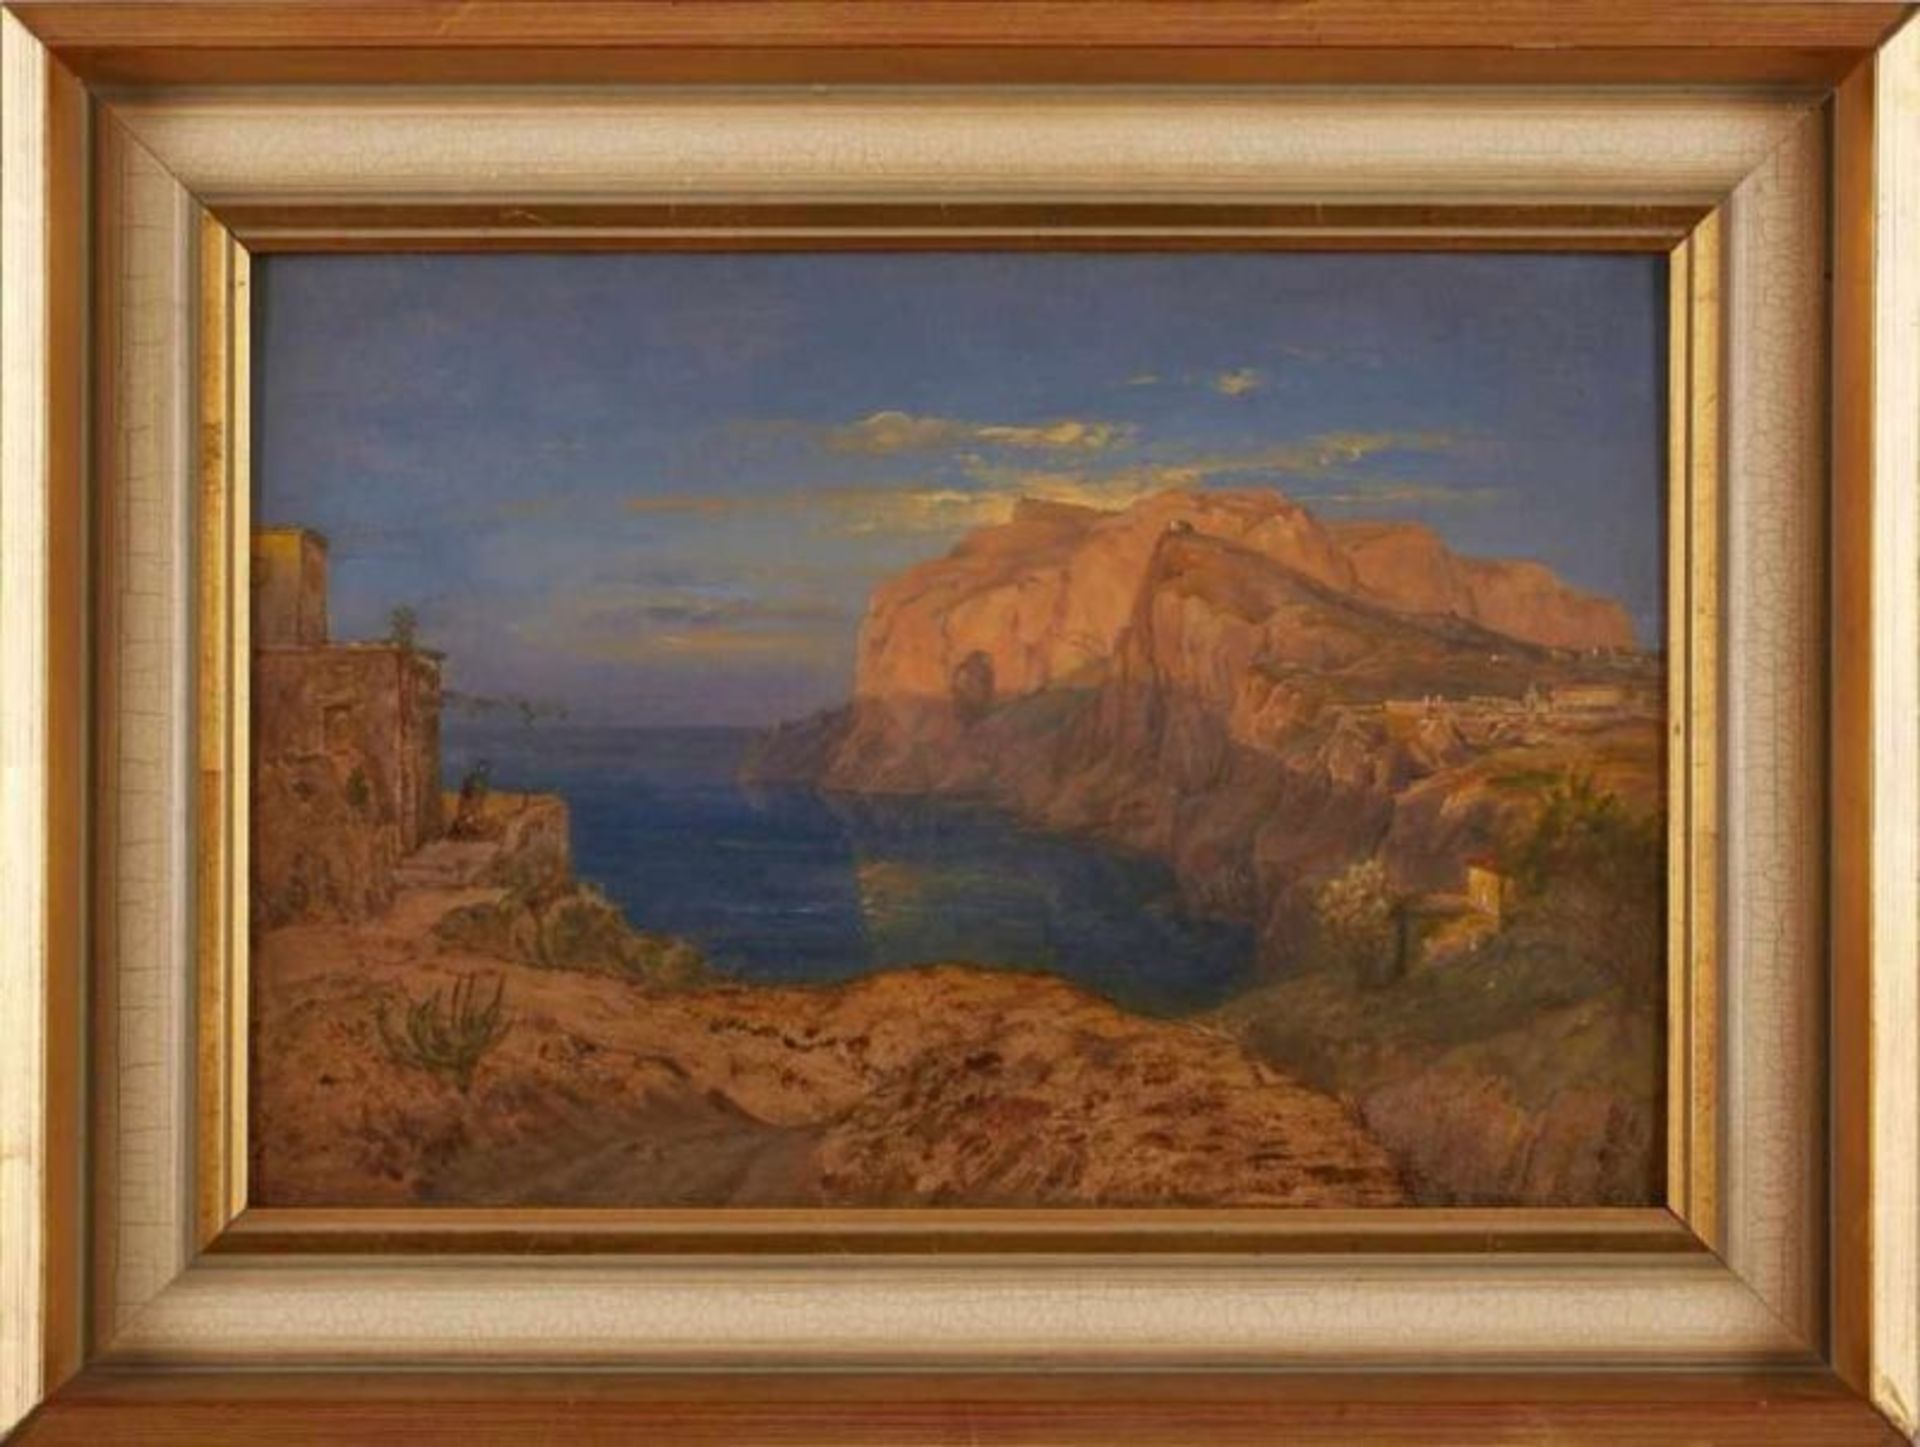 Gemälde/Ölstudie Carl Morgenstern 1811 Frankfurt - 1893 Frankfurt "Capri" Verso von alter Hand - Bild 2 aus 3